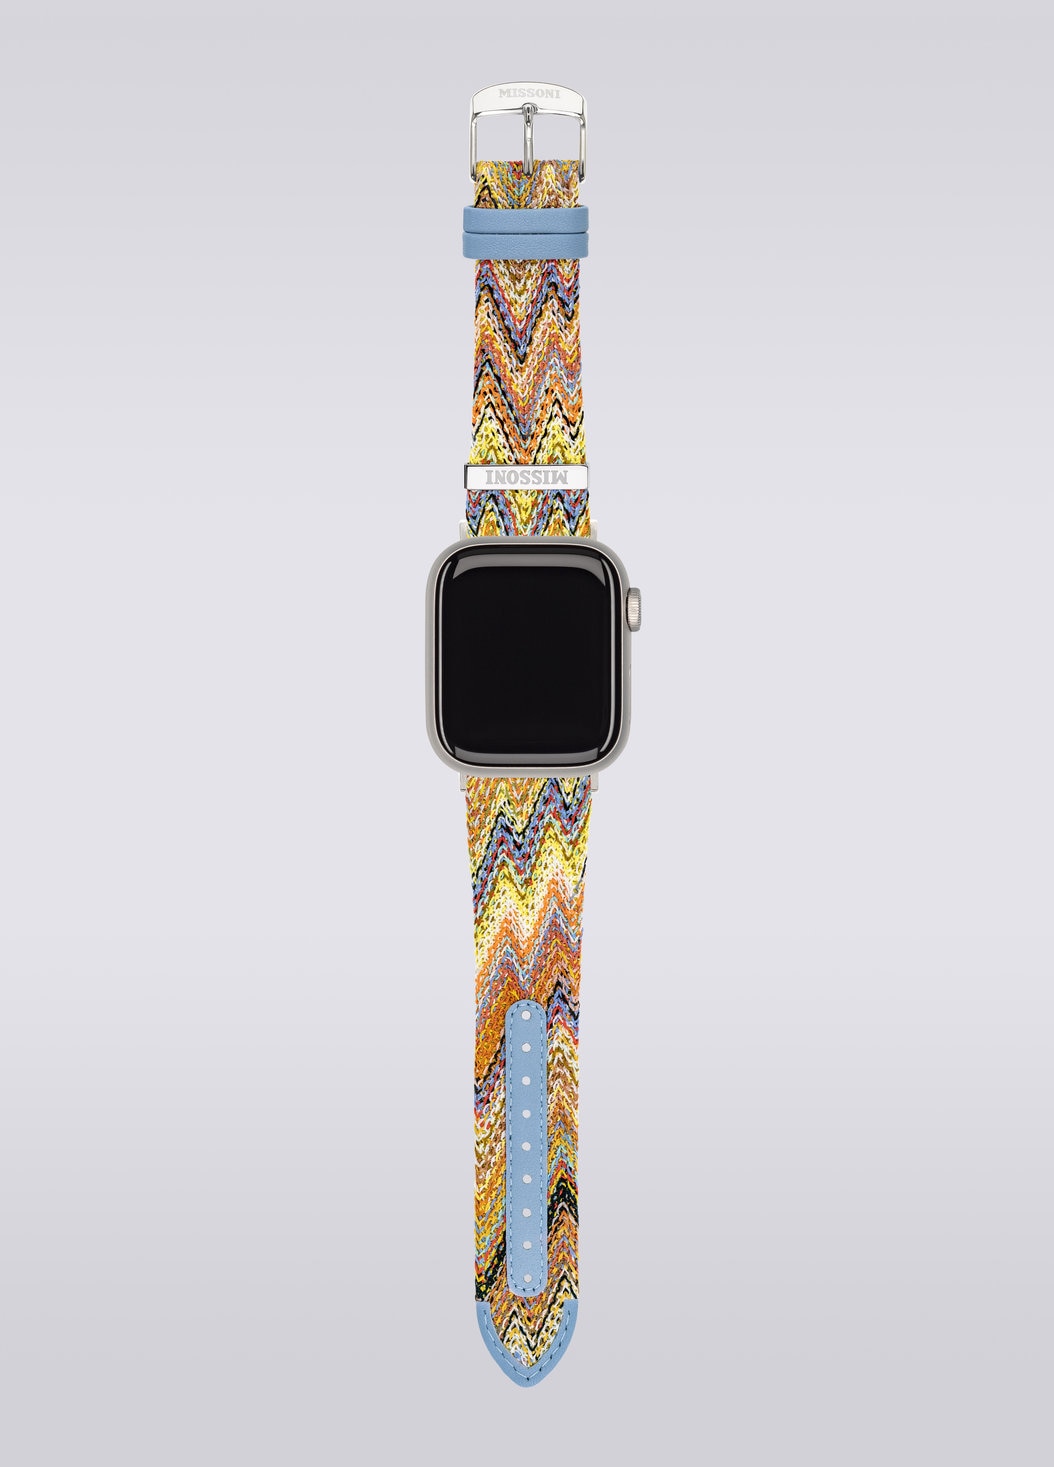 Missoniファブリック 22mm Apple watch対応ストラップ, マルチカラー  - 8053147046280 - 3